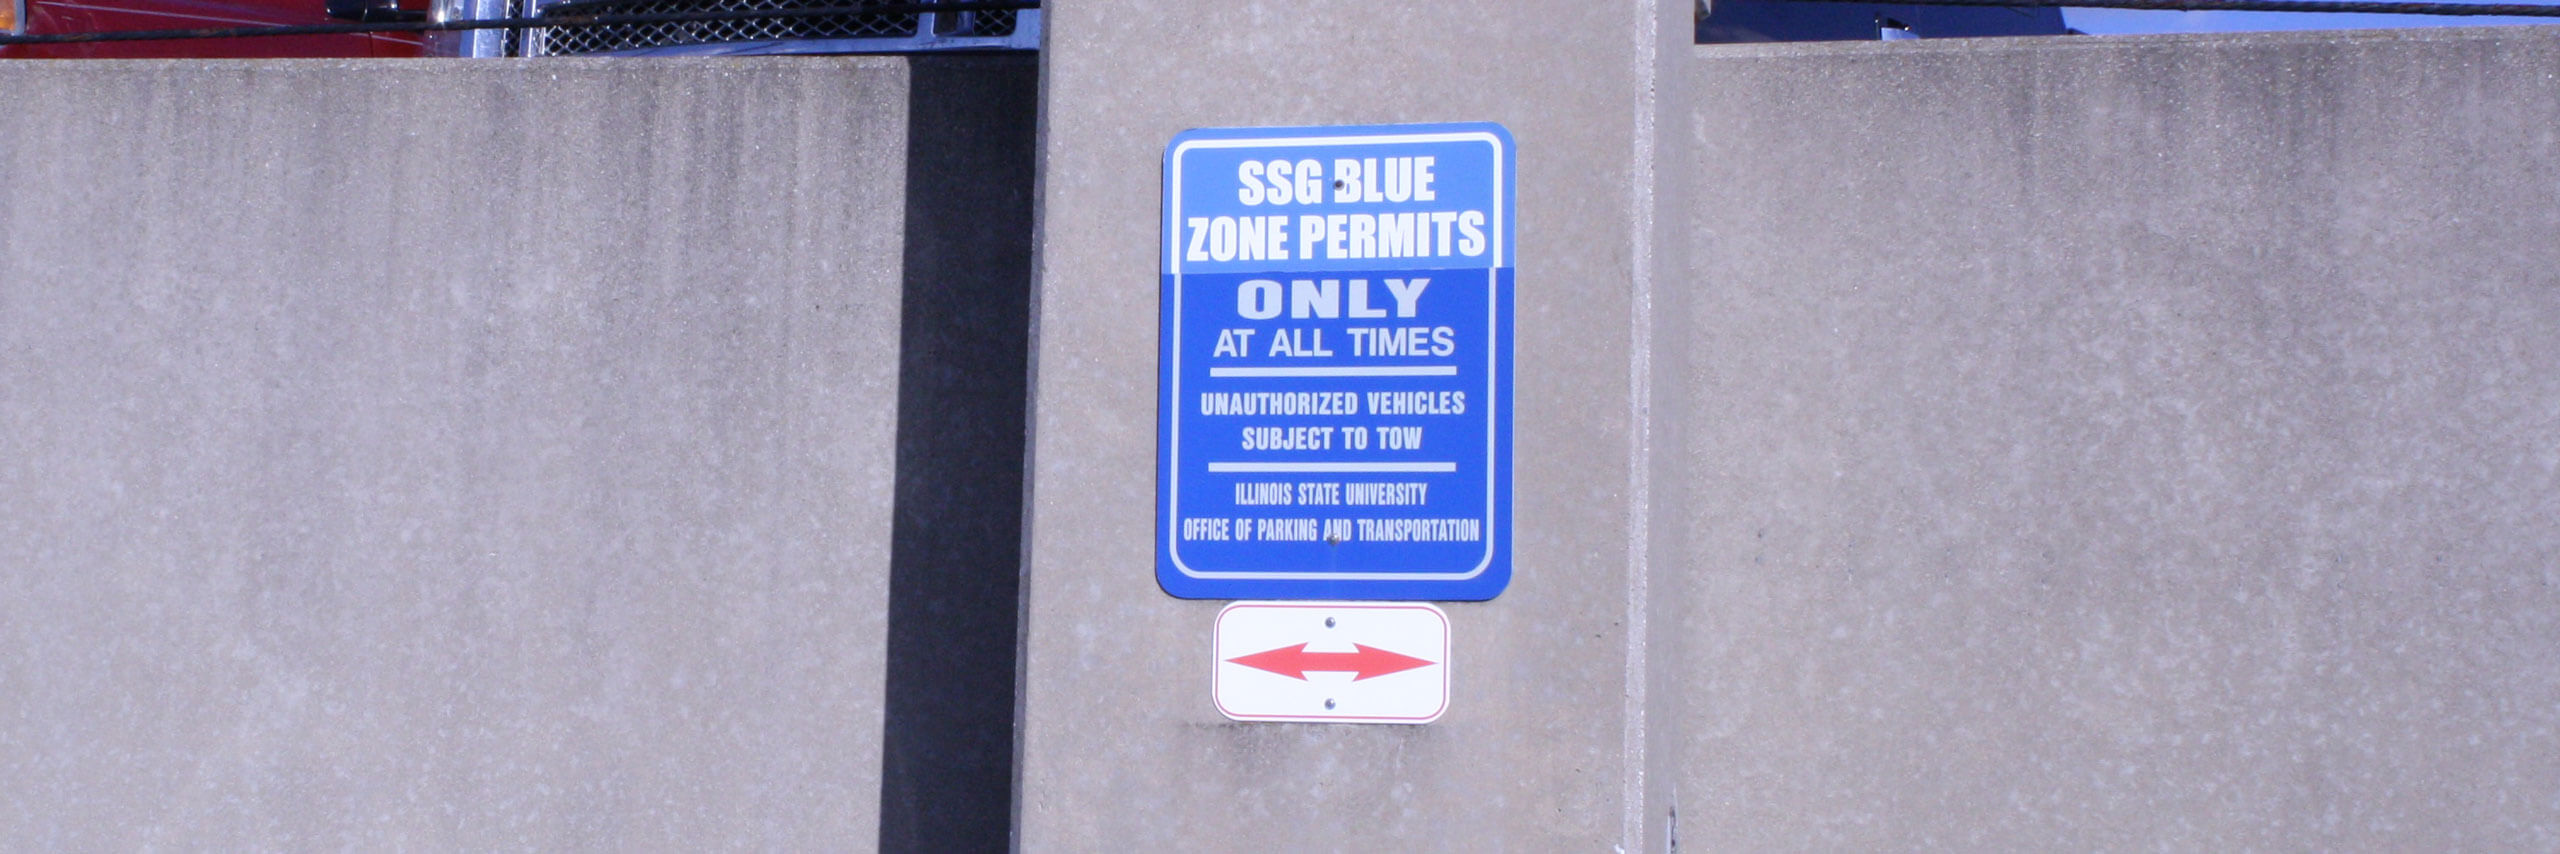 蓝色的校园居民停车标志的照片。